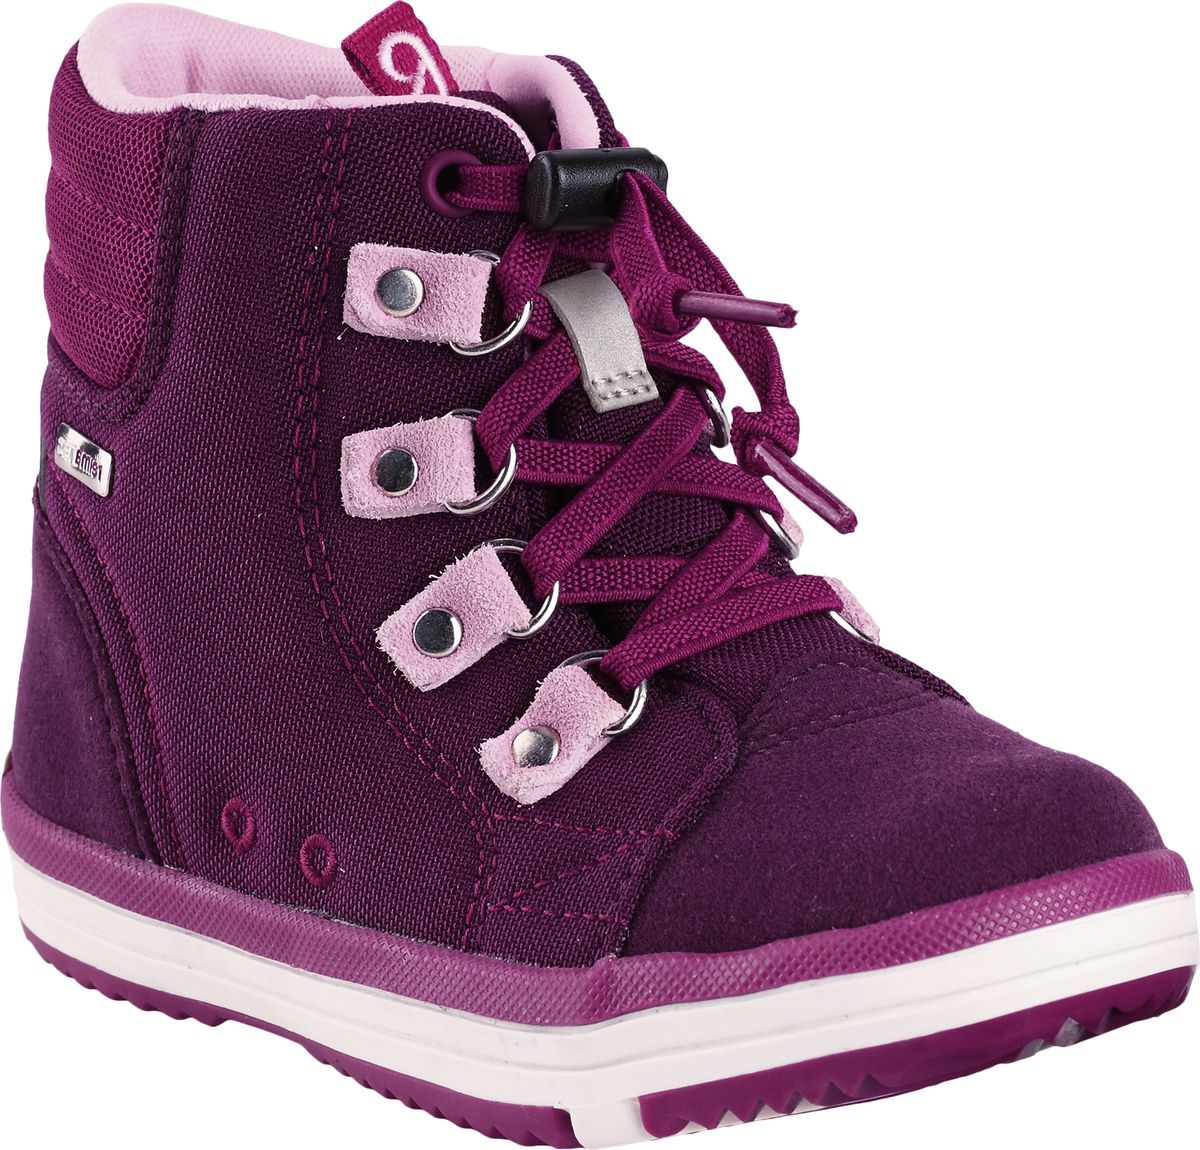 Ботинки детские Reima Wetter, цвет: фиолетовый. 5693434960. Размер 35